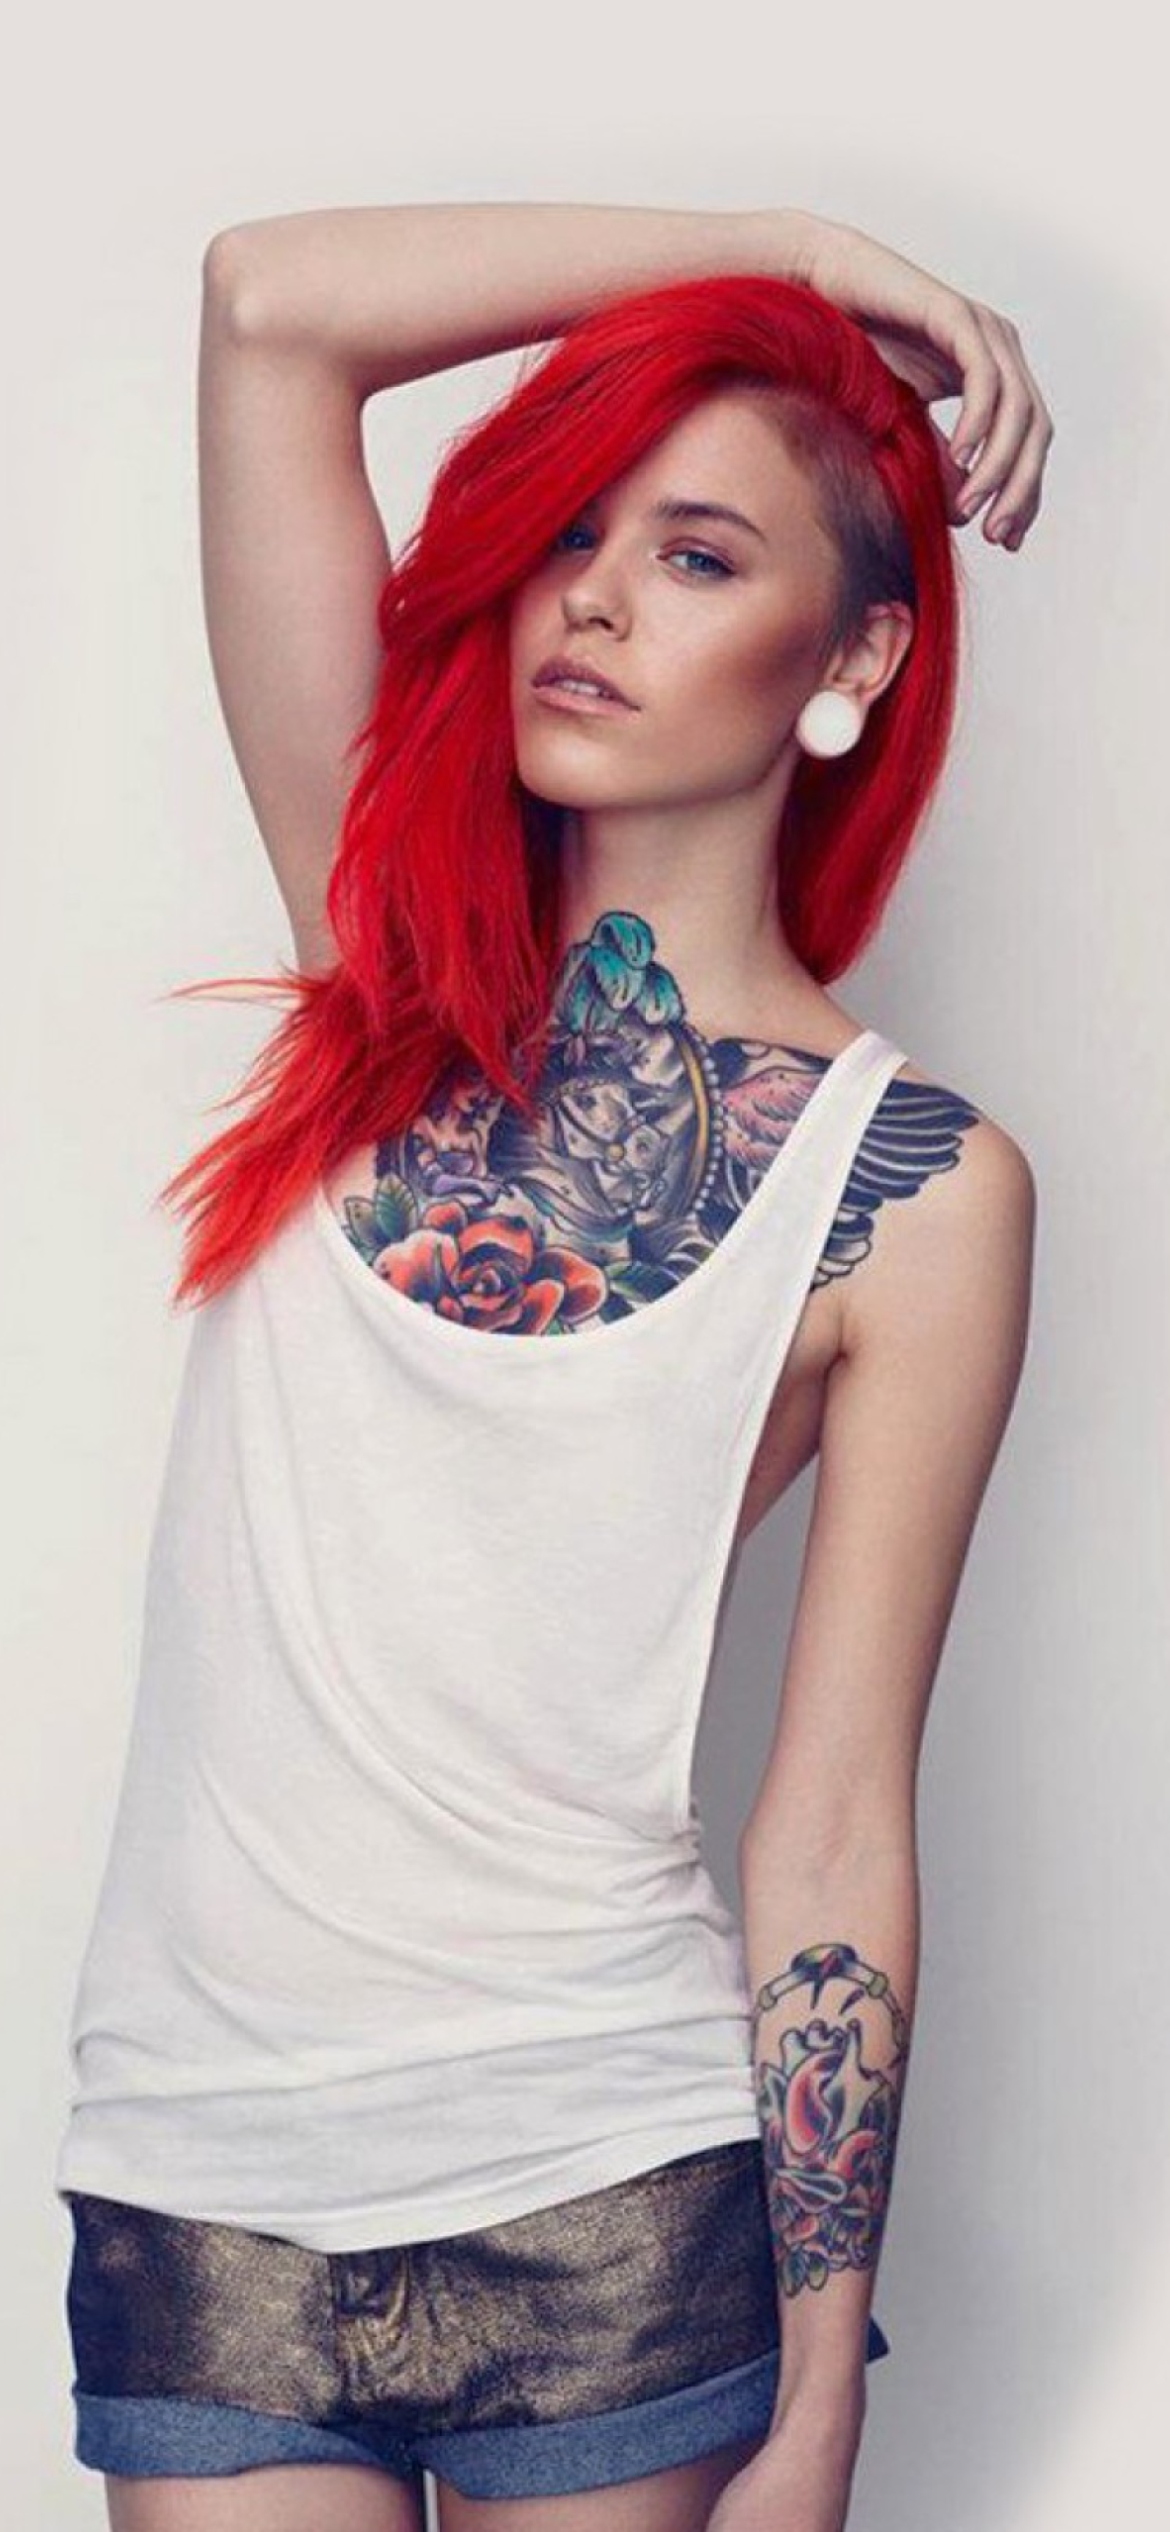 Das Beautiful Tattooed Redhead Wallpaper 1170x2532